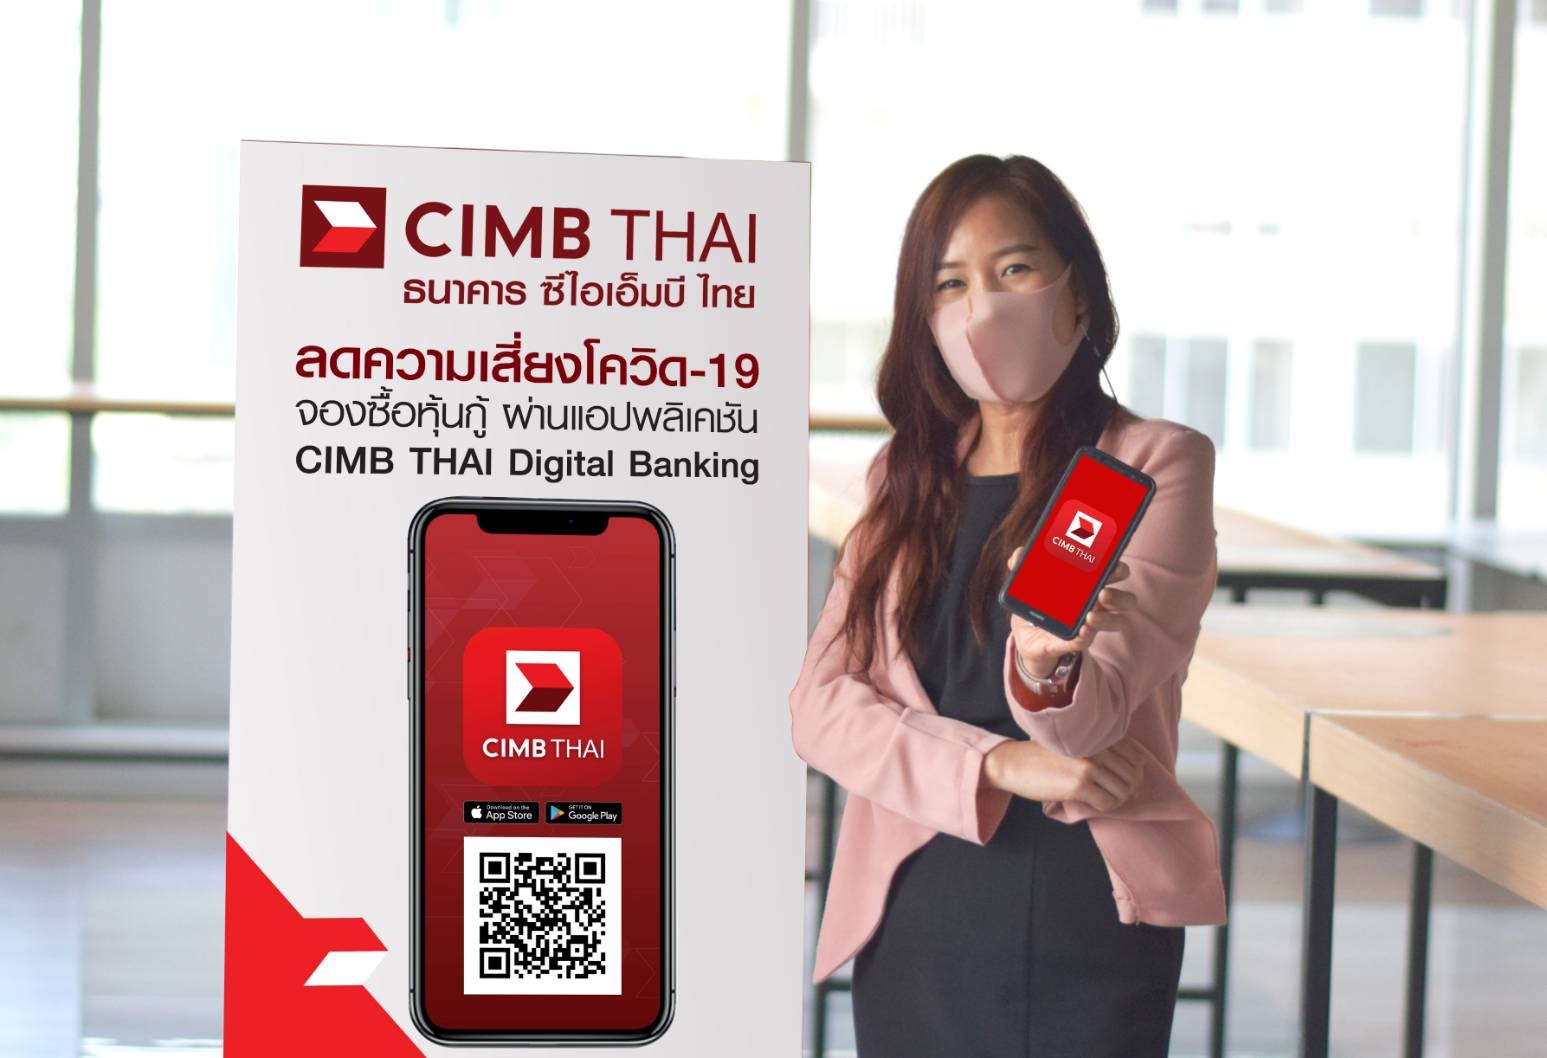 ธนาคาร ซีไอเอ็มบี ไทย ชวนลูกค้าจองซื้อหุ้นกู้ ผ่านแอป CIMB THAI Digital Banking